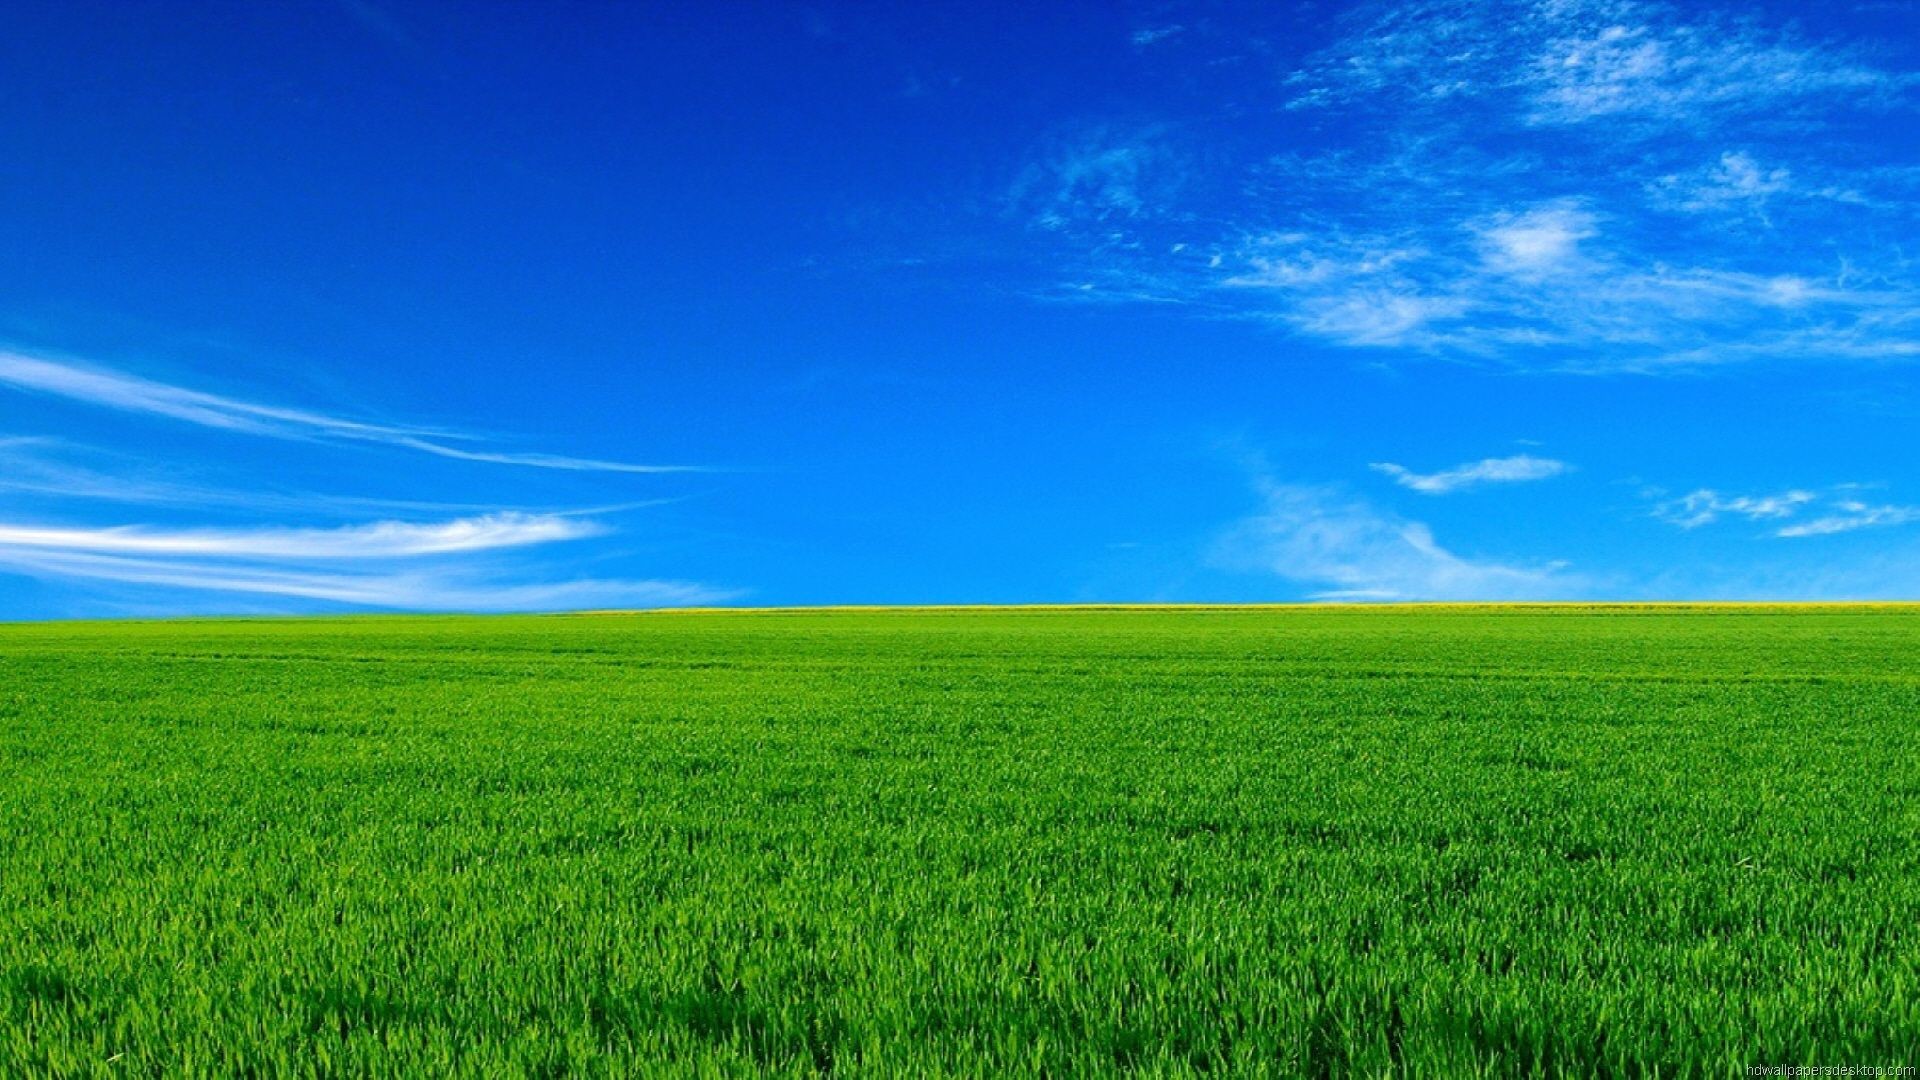 Hình nền cỏ xanh đẹp tươi mát mênh mông ngập tràn sức sống